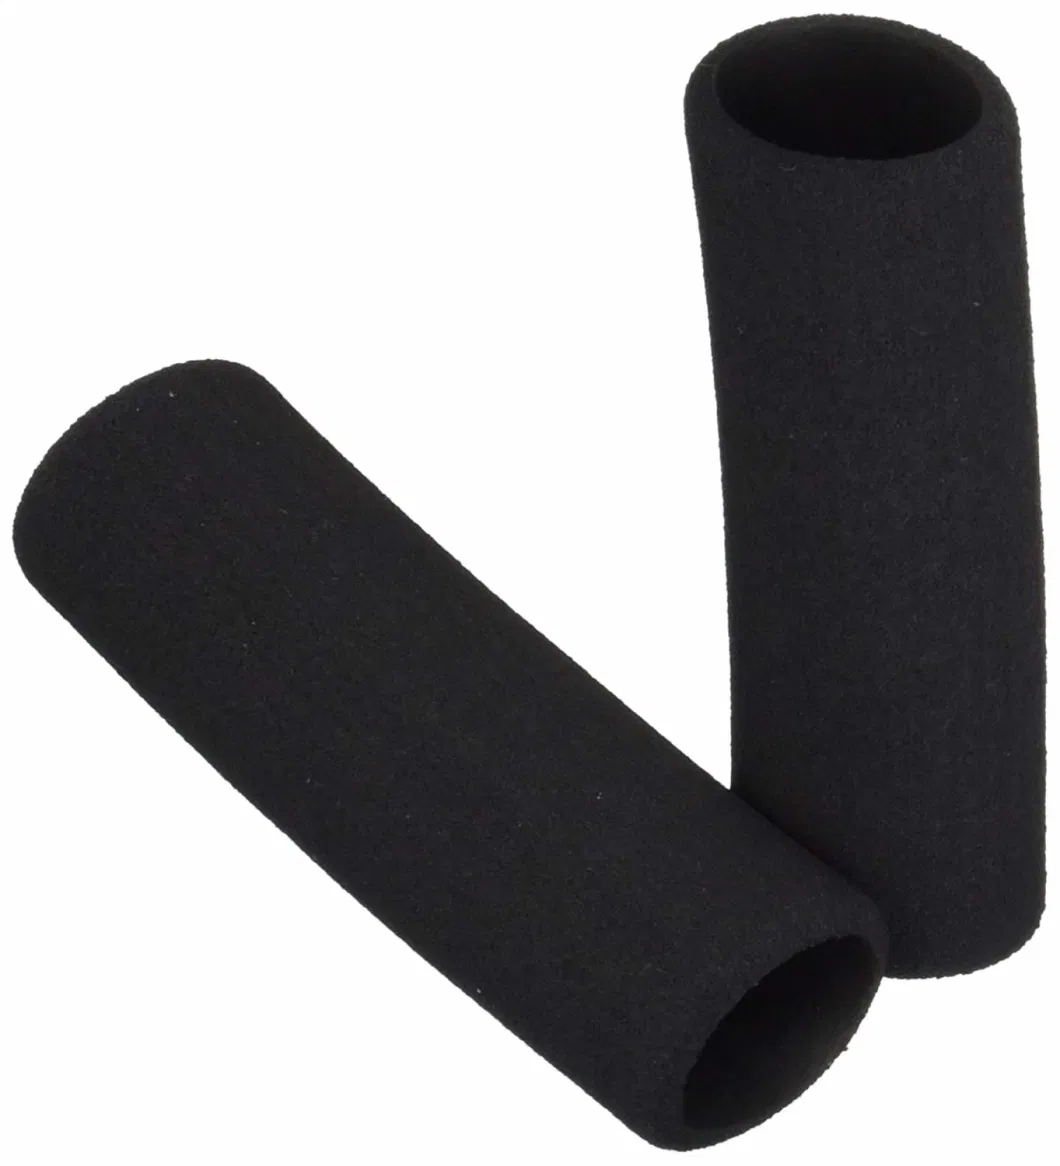 Rubber Tubing Foam Sponge Tube Rubber Handle Grips for Steel